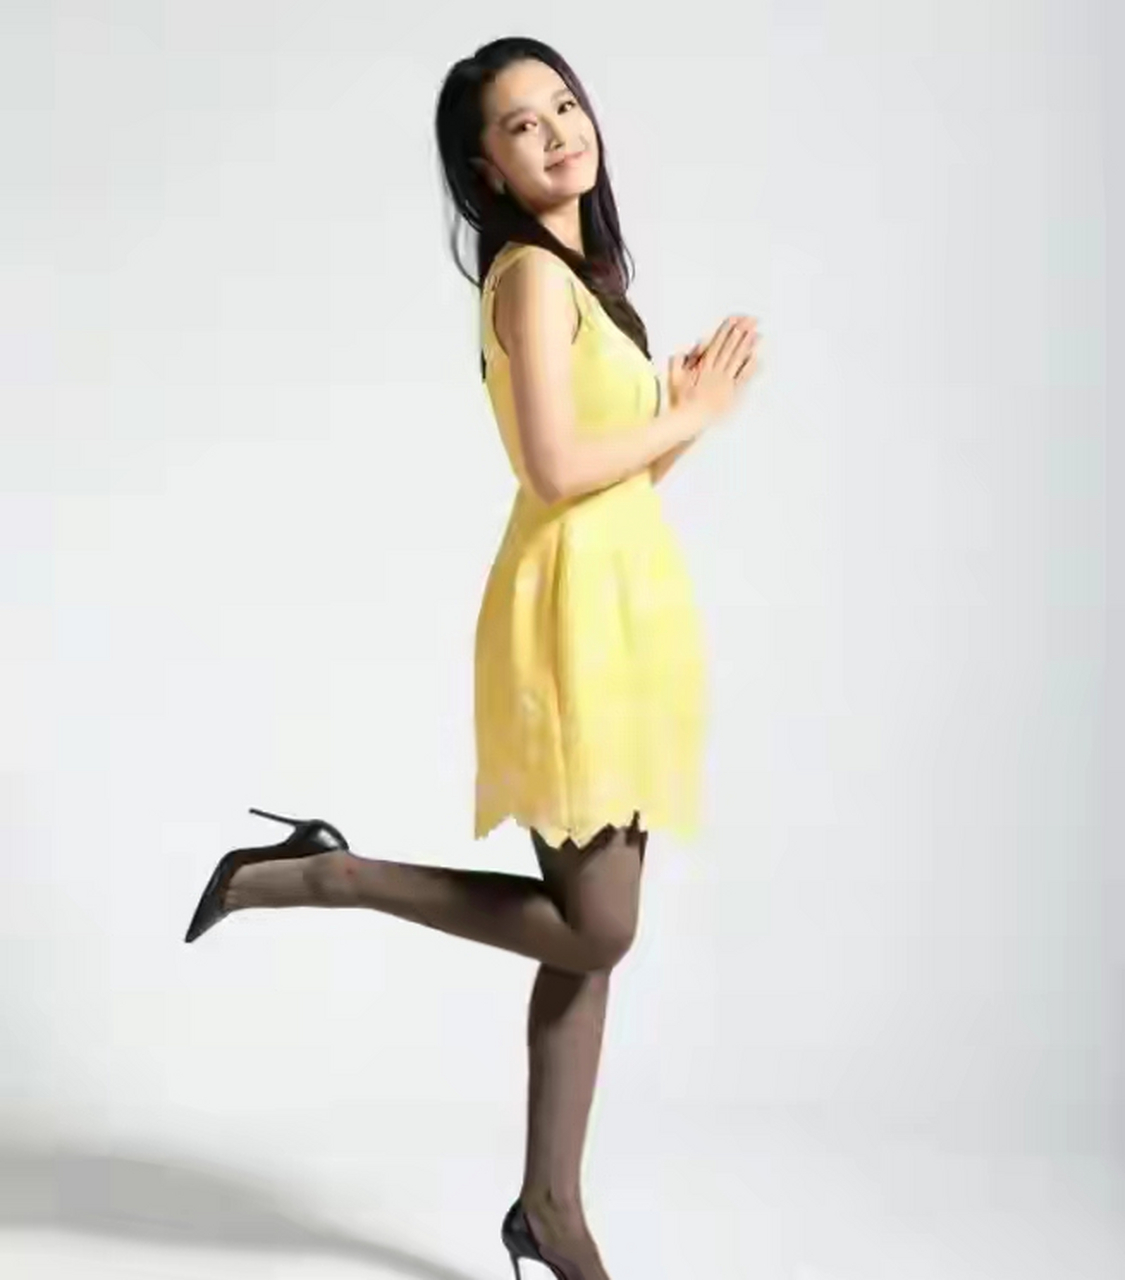 网友:最美不过卖萌的李沁,穿黑色丝袜搭配黄色连衣裙变身呆萌少女